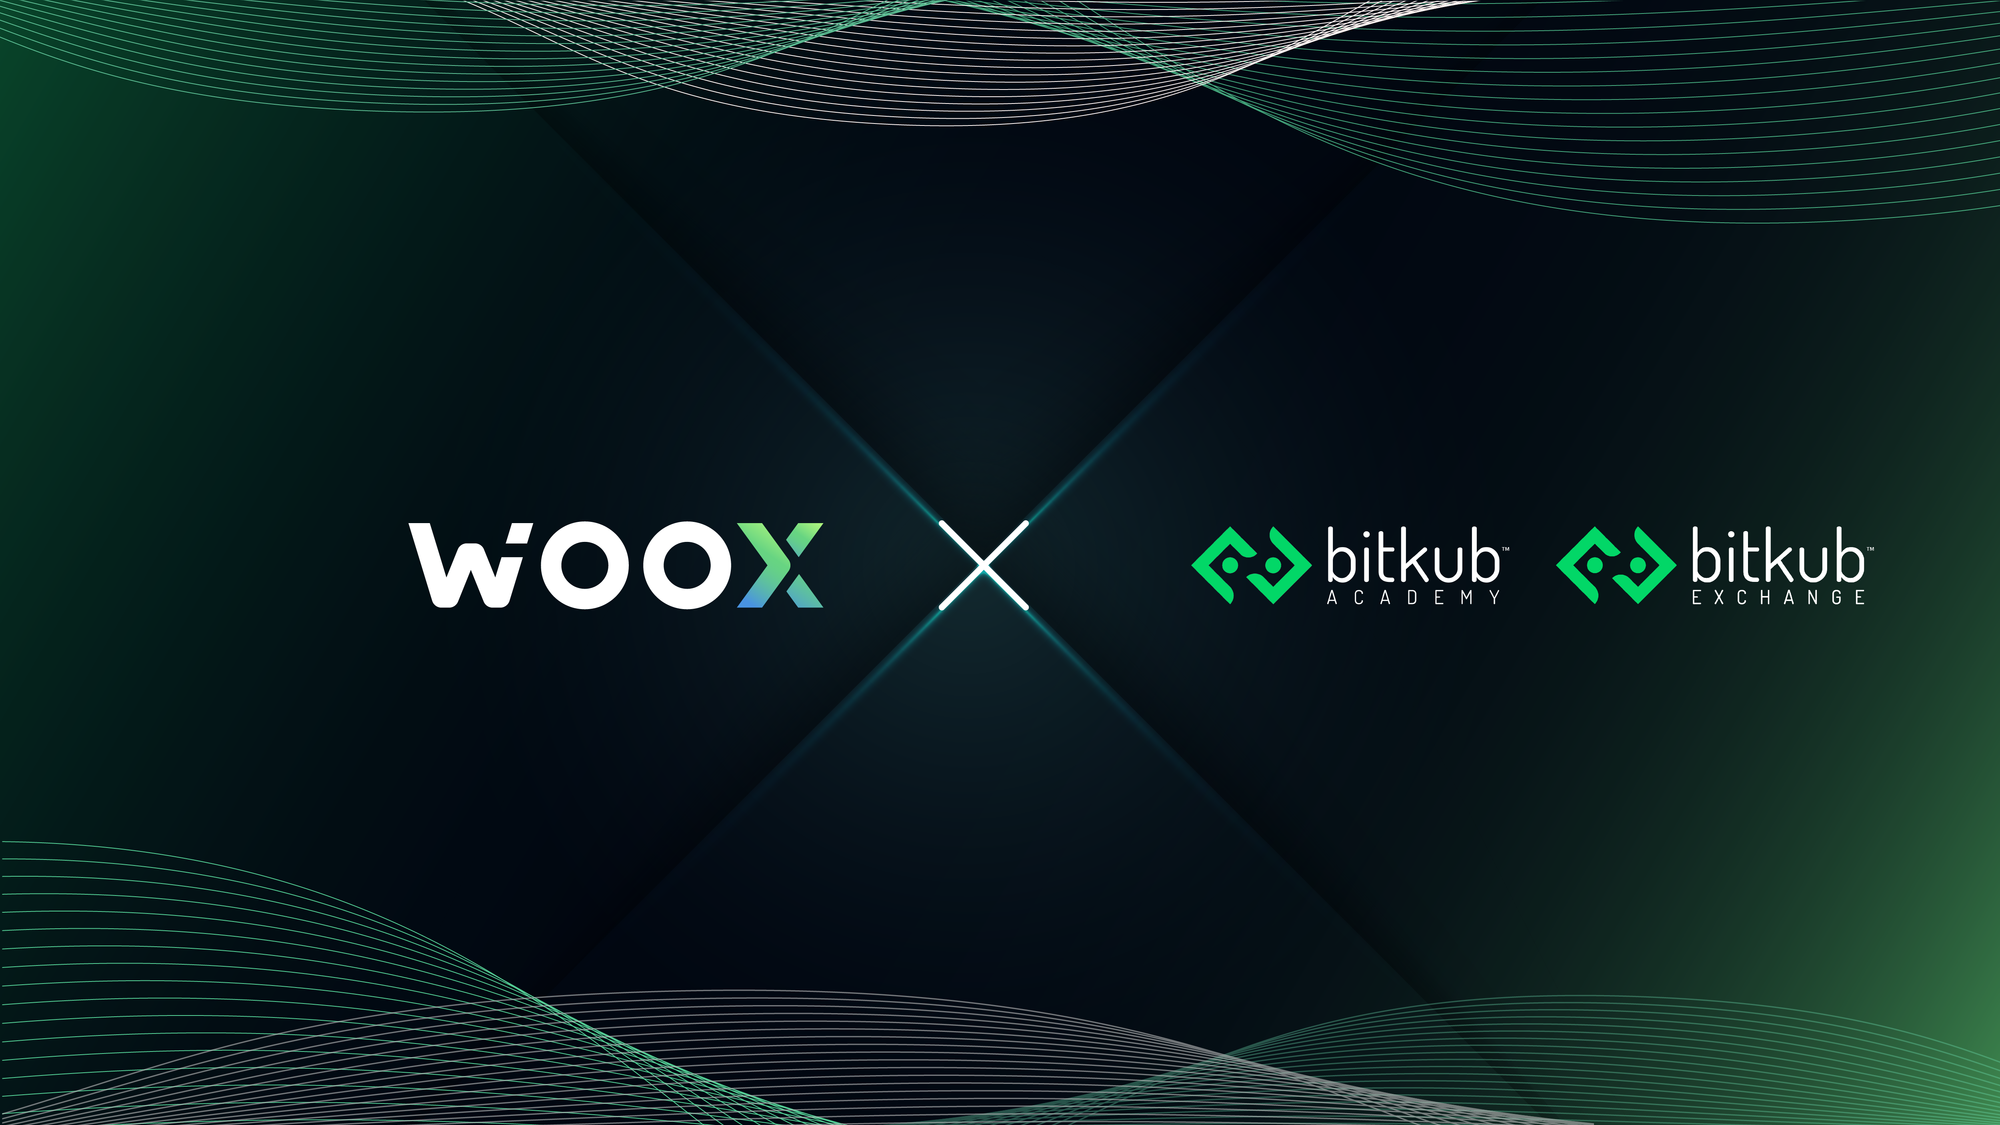 Bitkub Exchange and Bitkub Academy partner with WOO to promote blockchain and Web 3.0 education